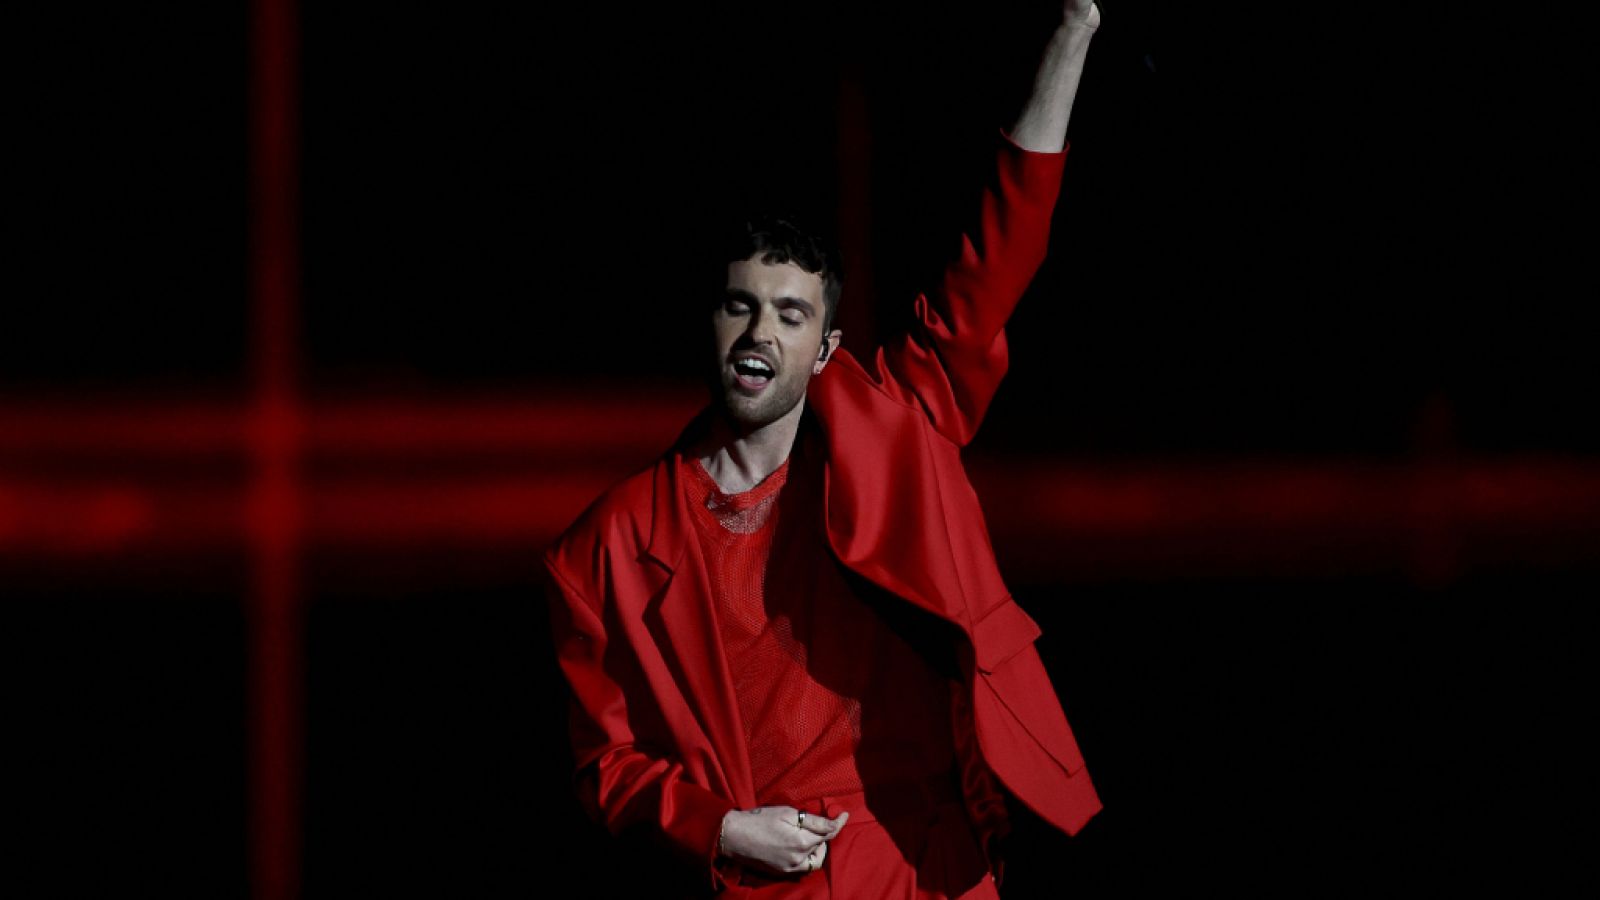 Eurovisión - Duncan Laurence interpreta "Feel Something" en la primera semifinal